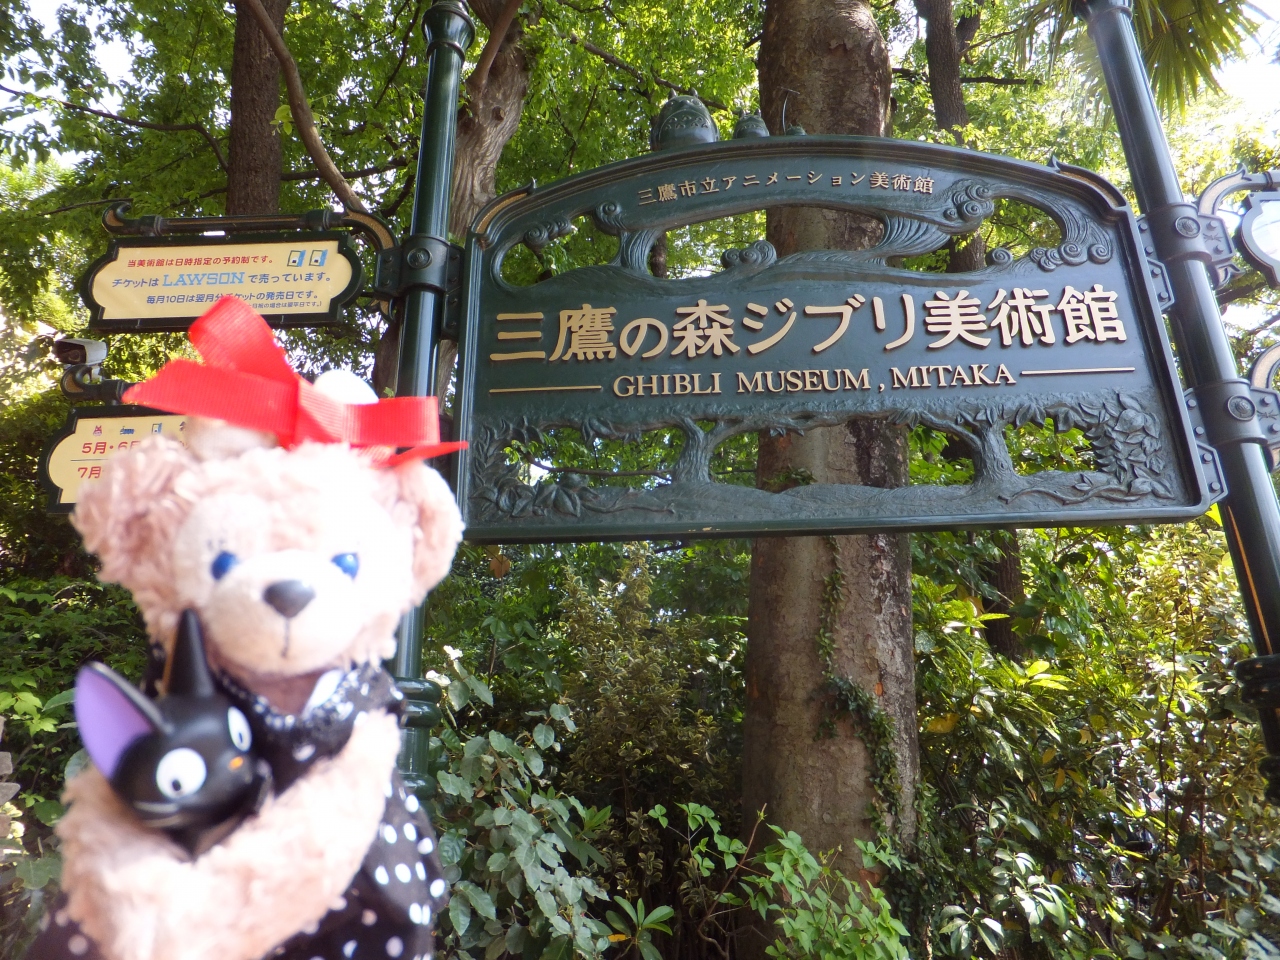 三鷹の森ジブリ美術館に行ってきました 吉祥寺 三鷹 東京 の旅行記 ブログ By チズカさん フォートラベル